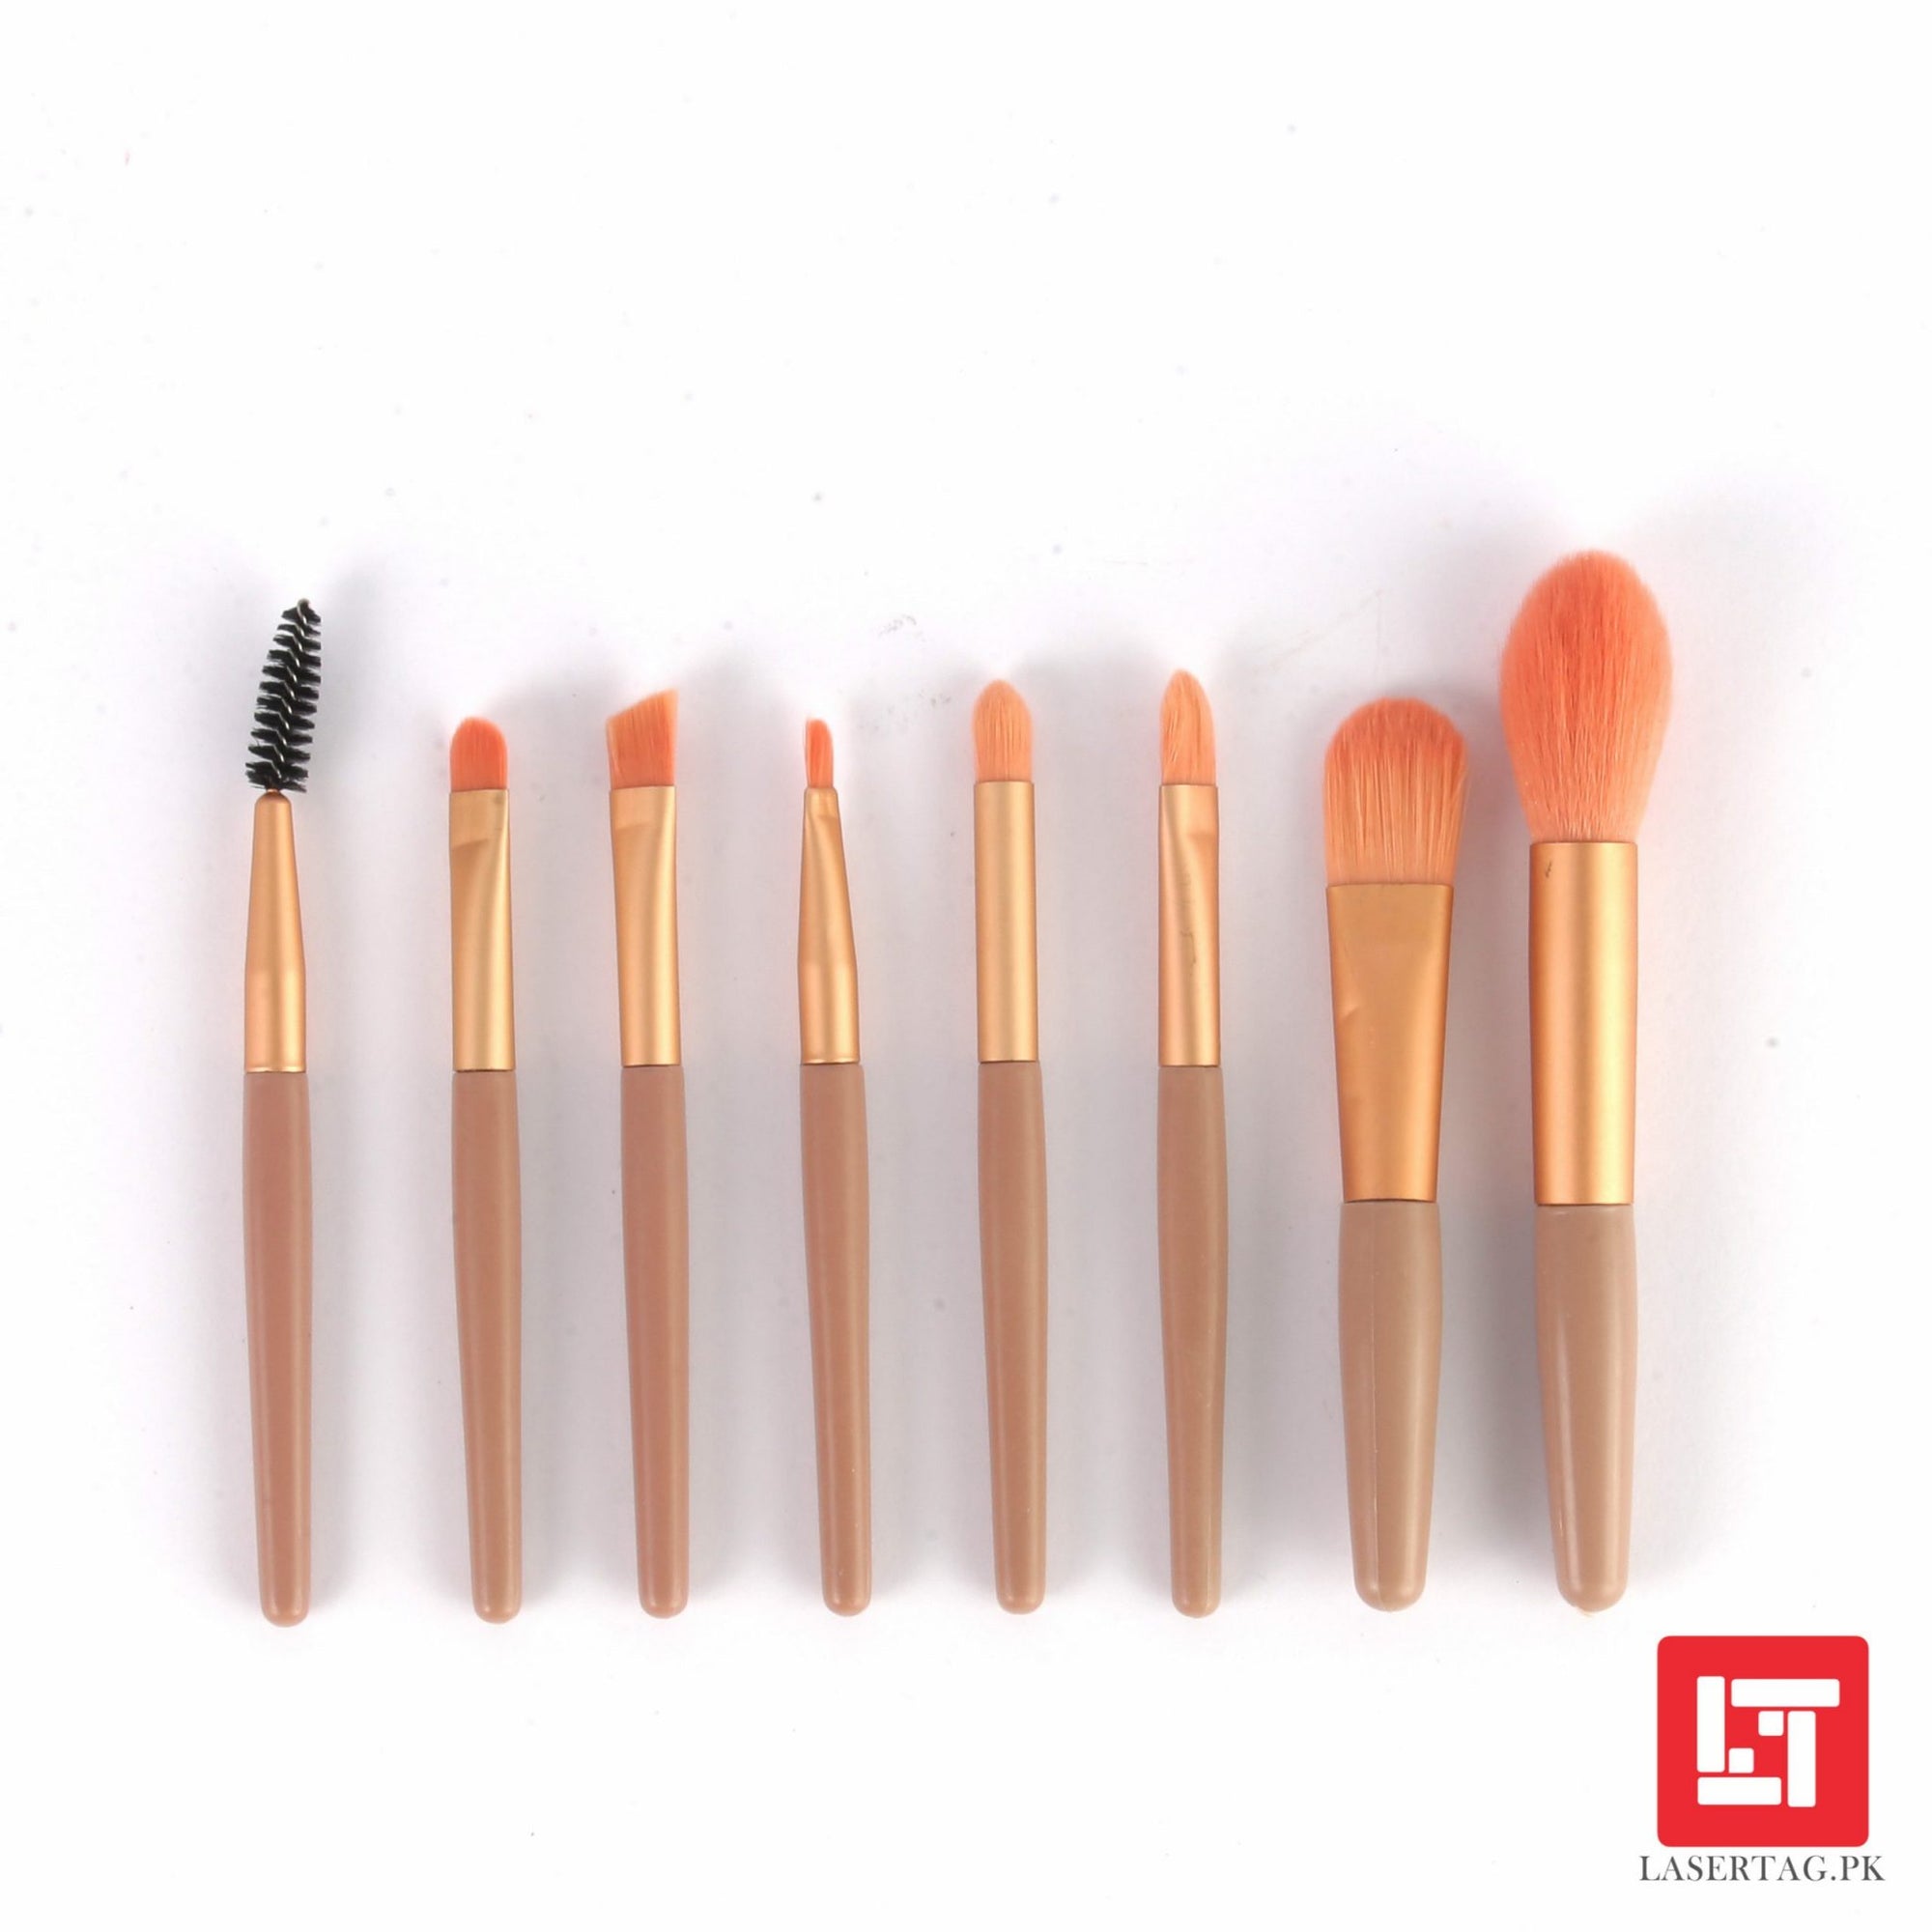 Sleek Design 7 in 1 Makeup Brush Set freeshipping - lasertag.pk